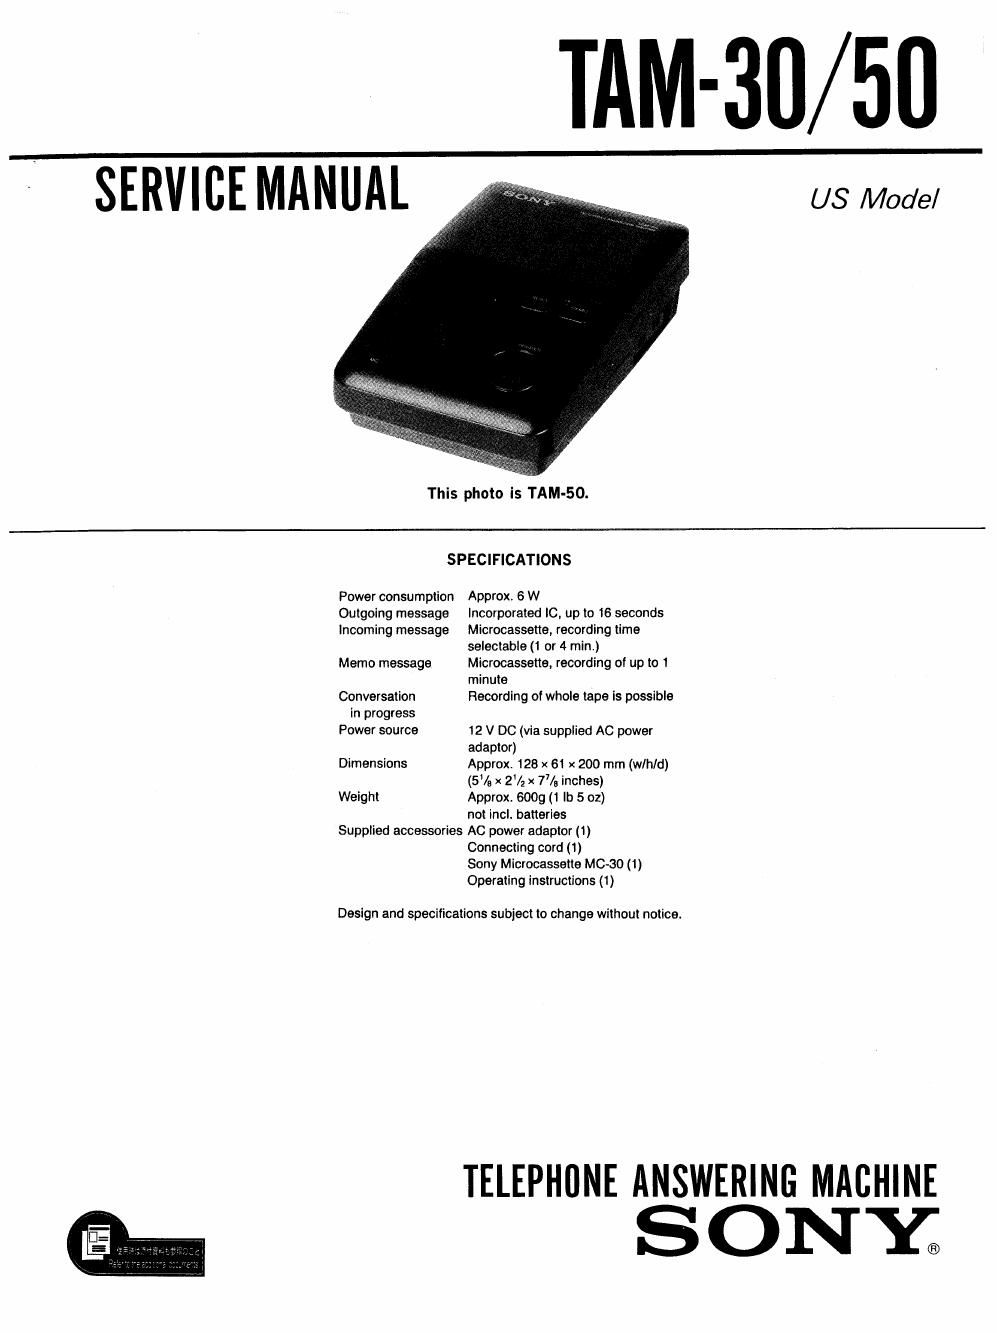 sony tam 30 50 service manual